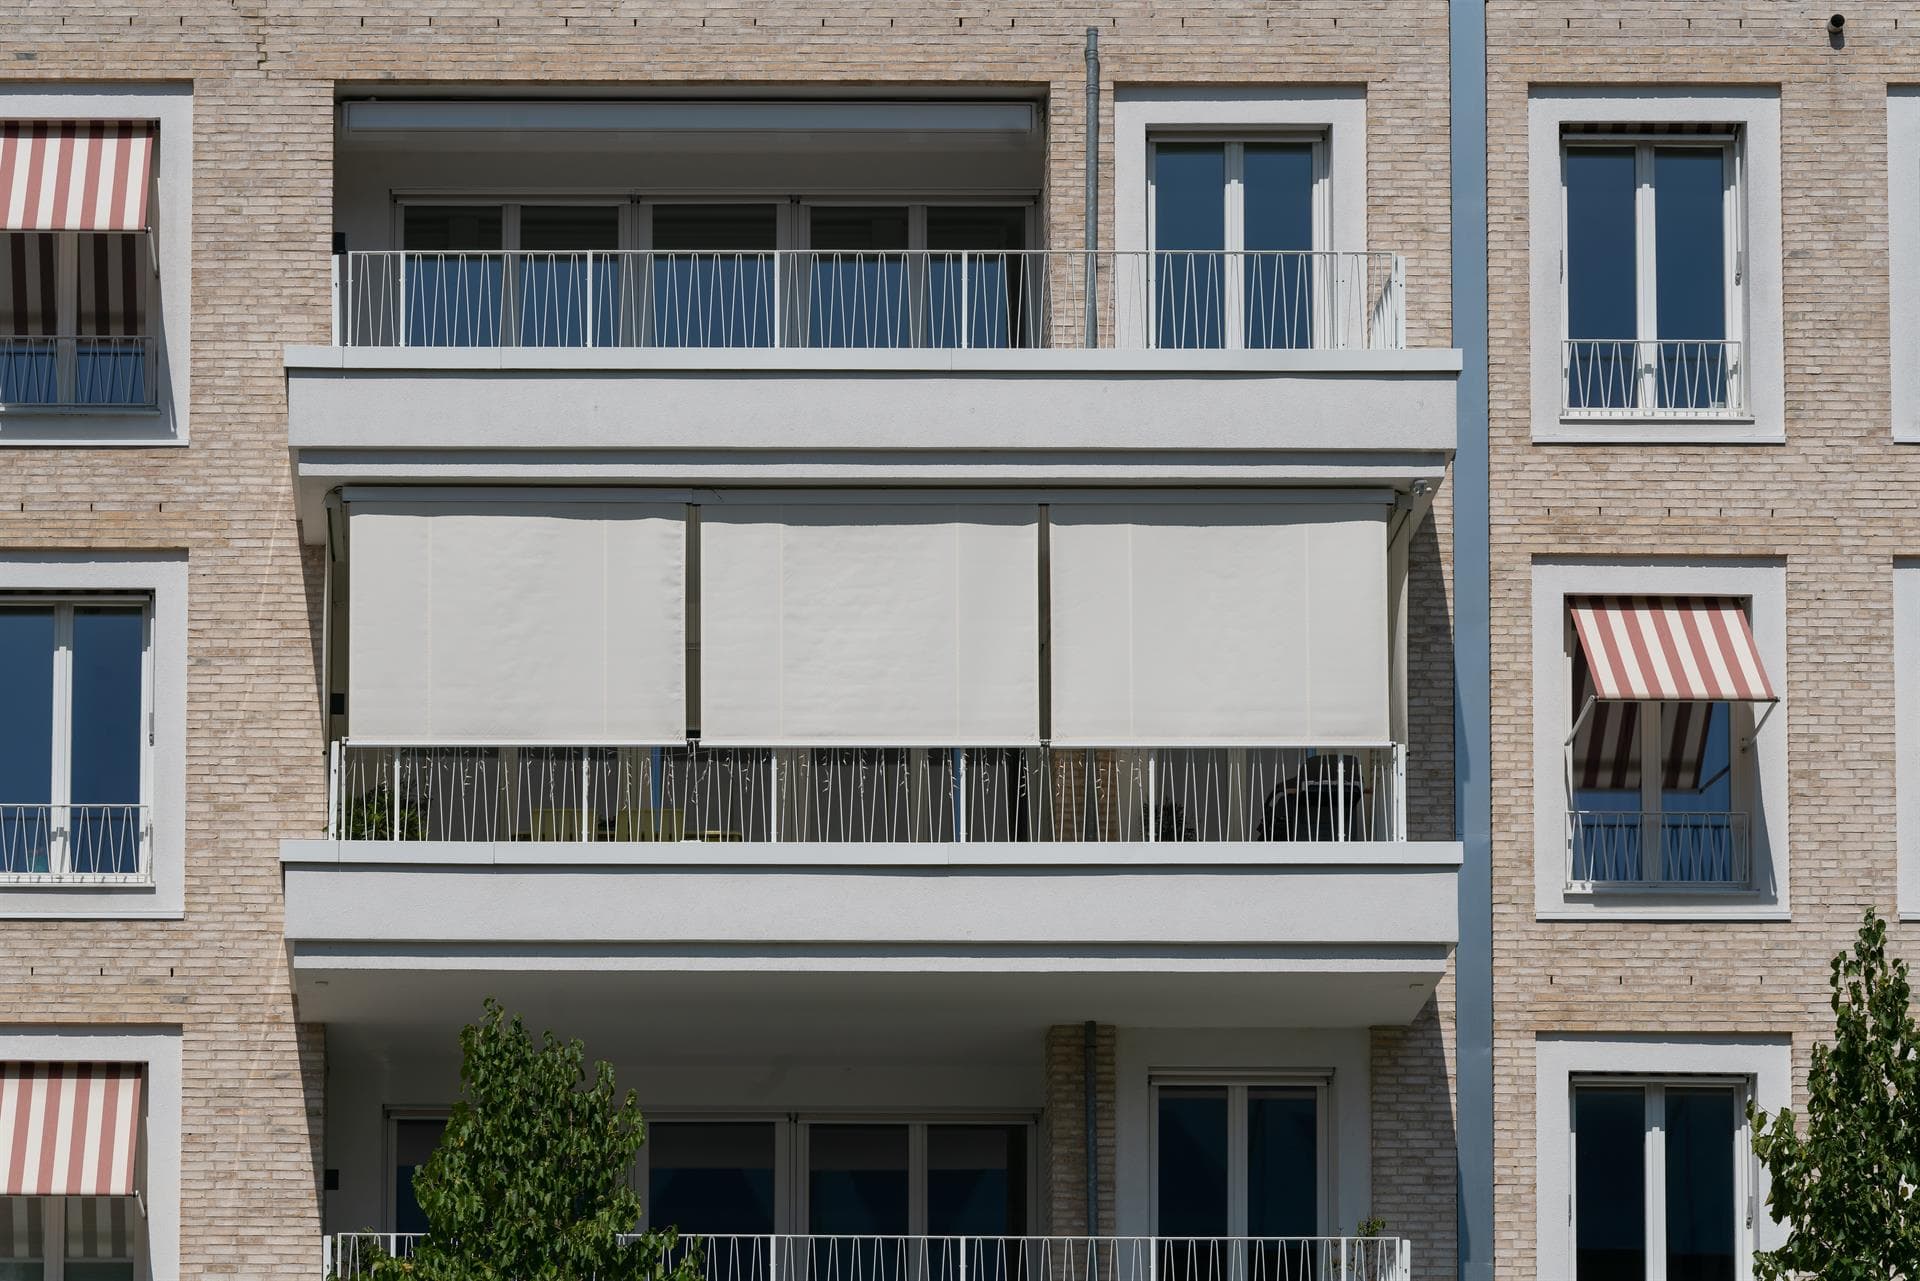 Consiga un mayor confort instalando un toldo en su balcón o ventana